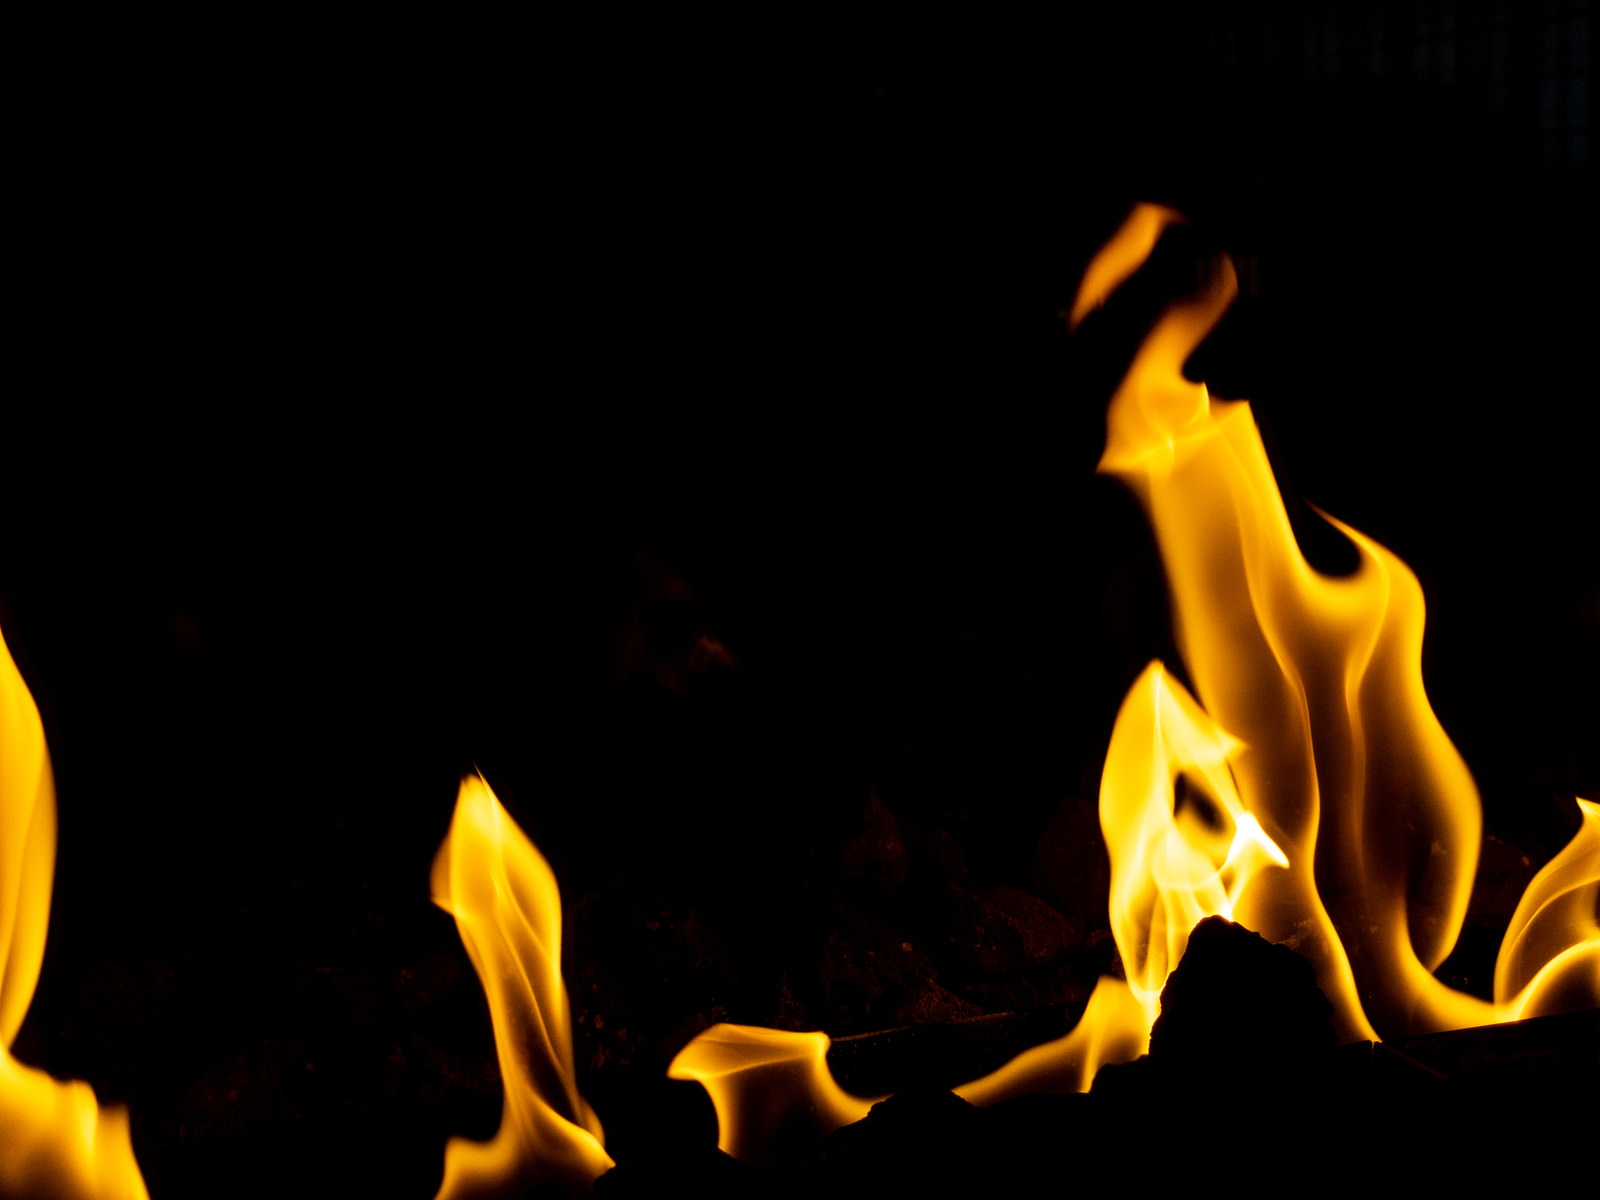 「メラメラと火が揺らぐ」の写真